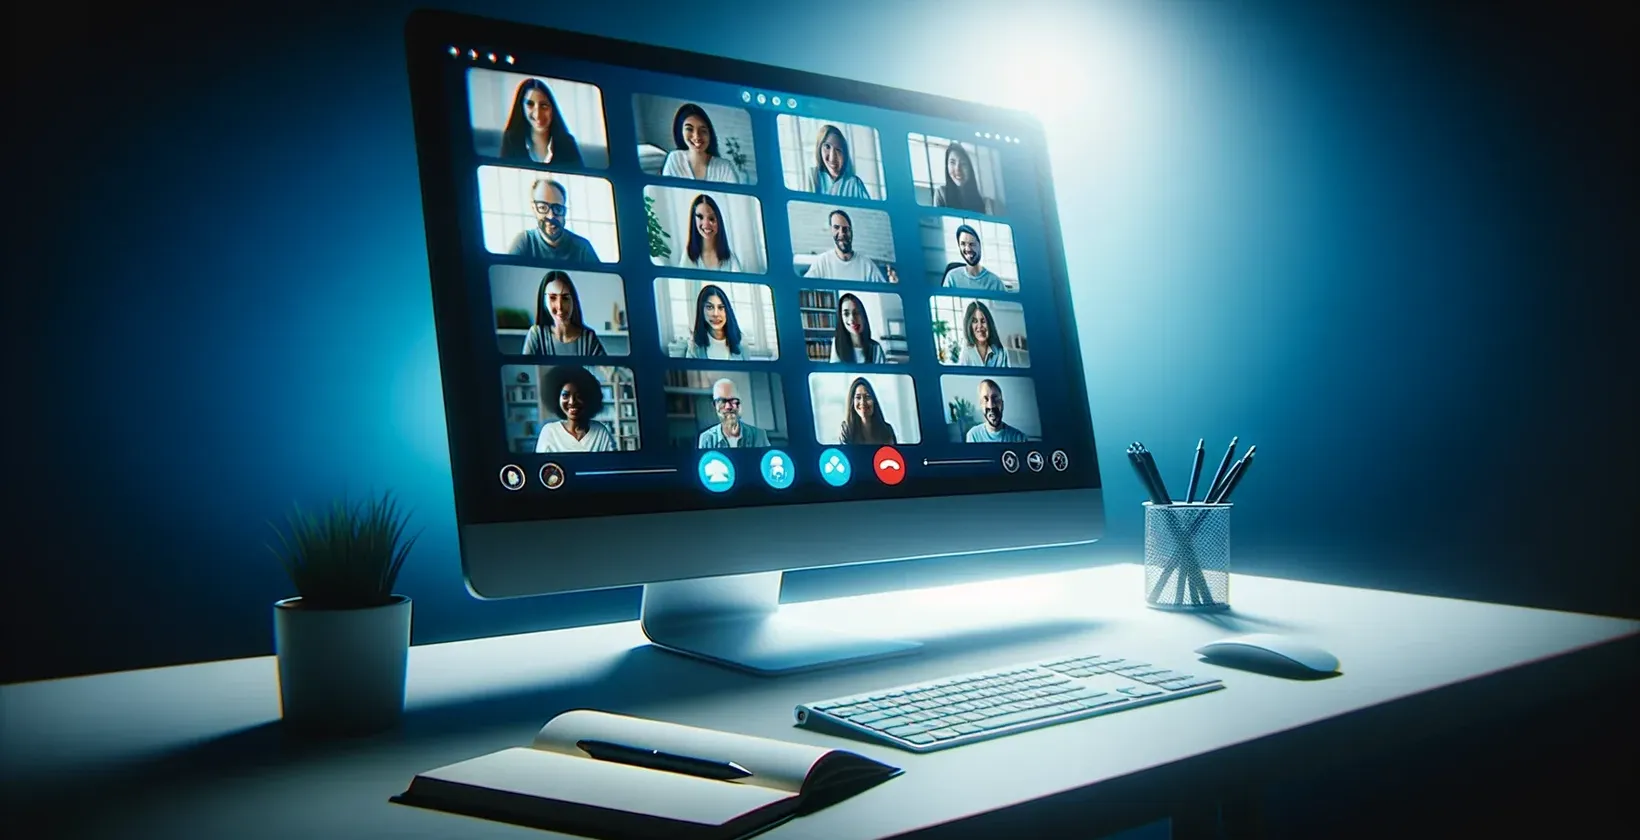 Slika zaslona računala na kojoj se prikazuje GoToMeeting sesija s vidljivom grupom osoba i transkripcijom uživo.